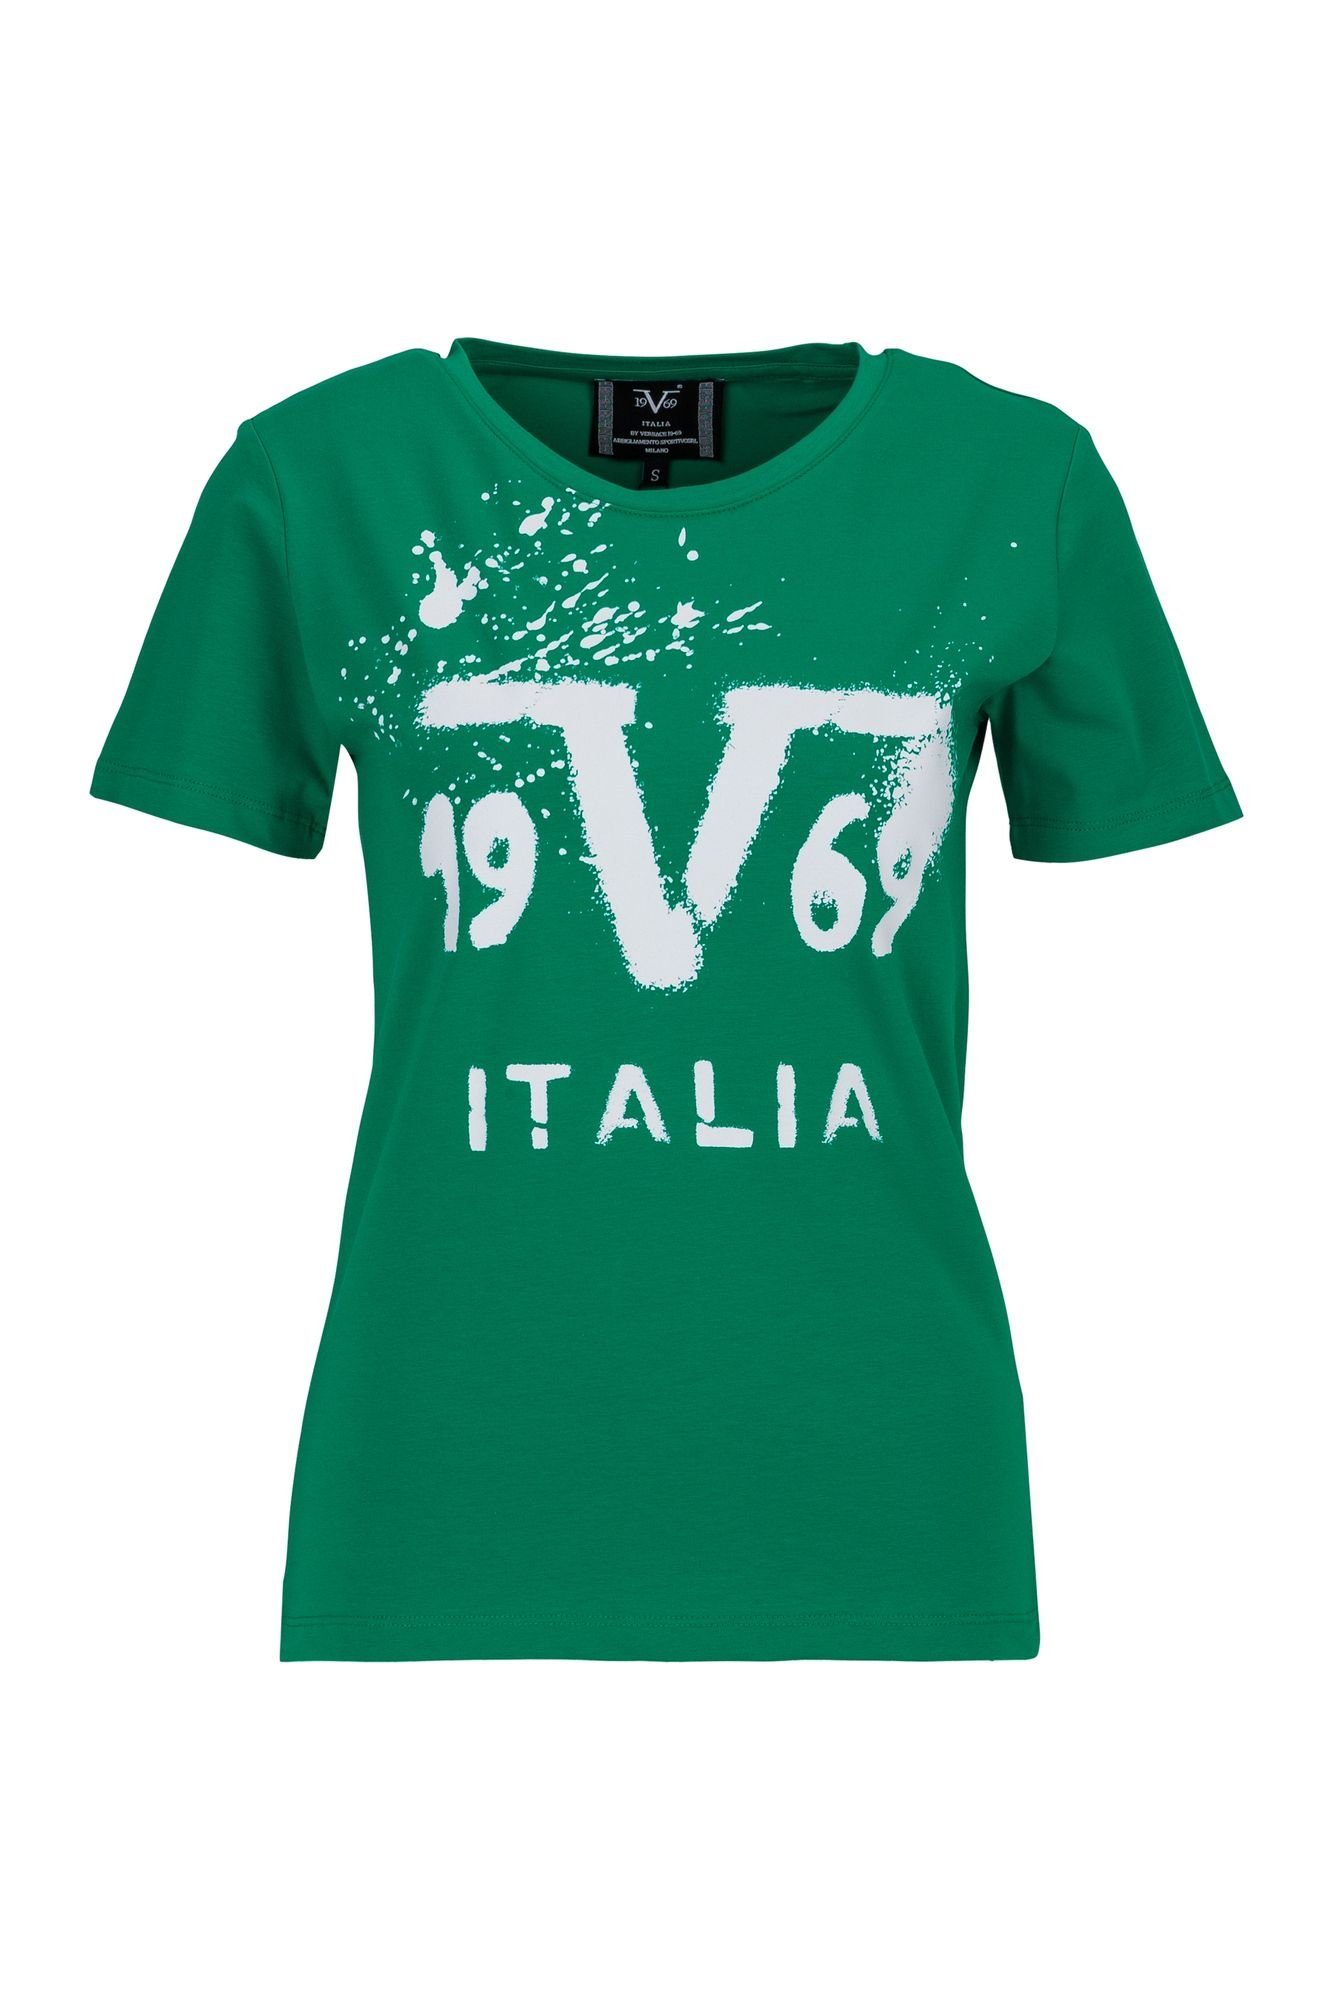 19V69 Italia by Versace T-Shirt Chiara